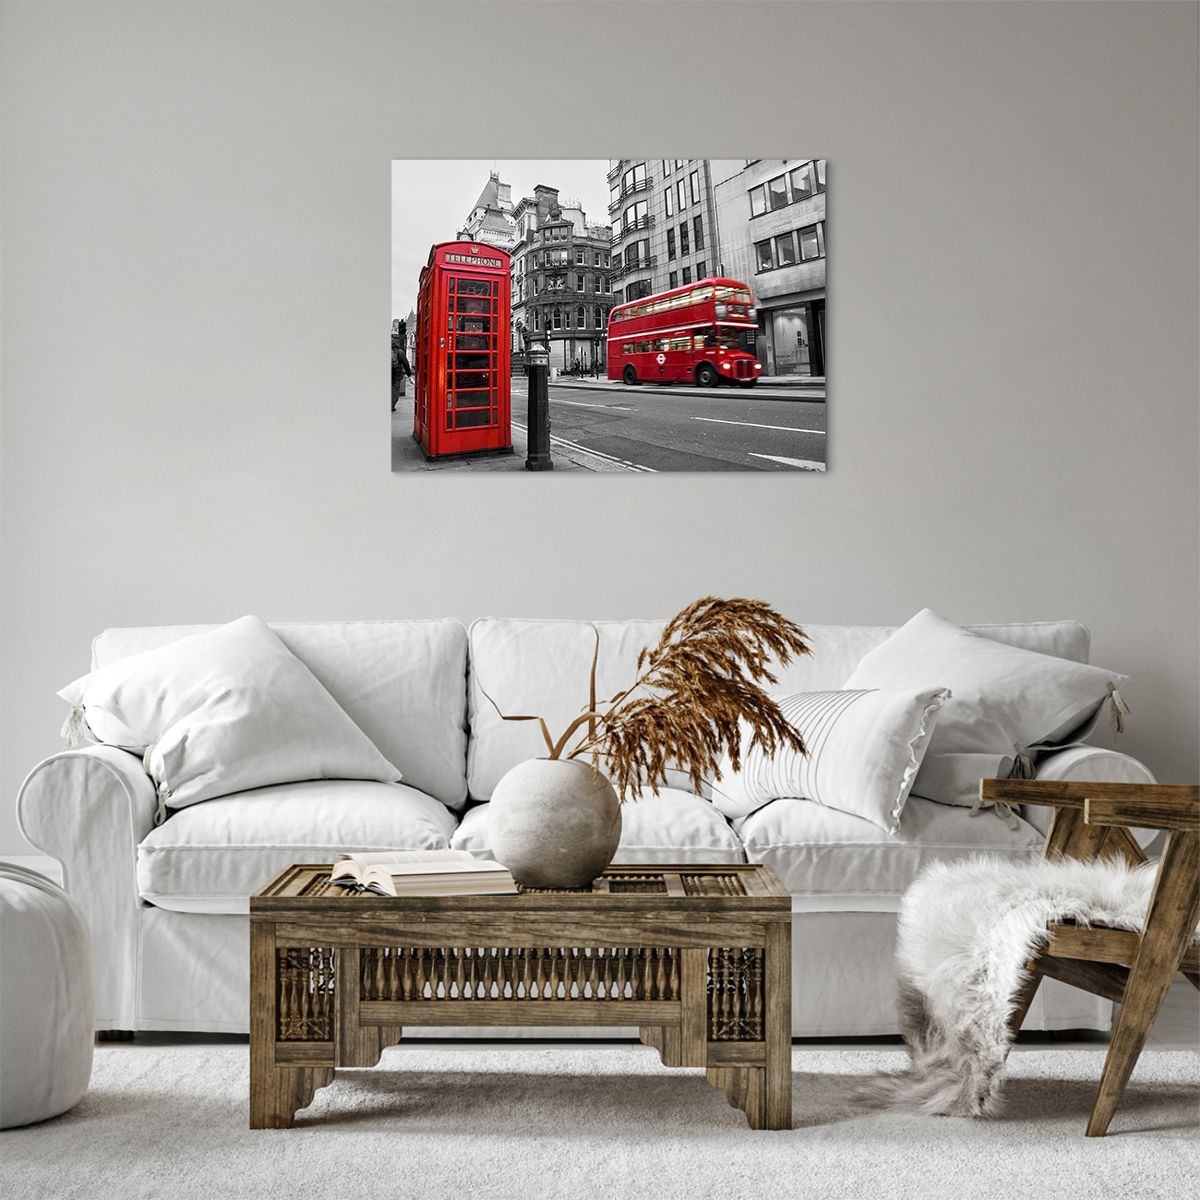 Bild auf Leinwand Stadt, Bild auf Leinwand London, Bild auf Leinwand Die Architektur, Bild auf Leinwand Roter Bus, Bild auf Leinwand Telefonzelle